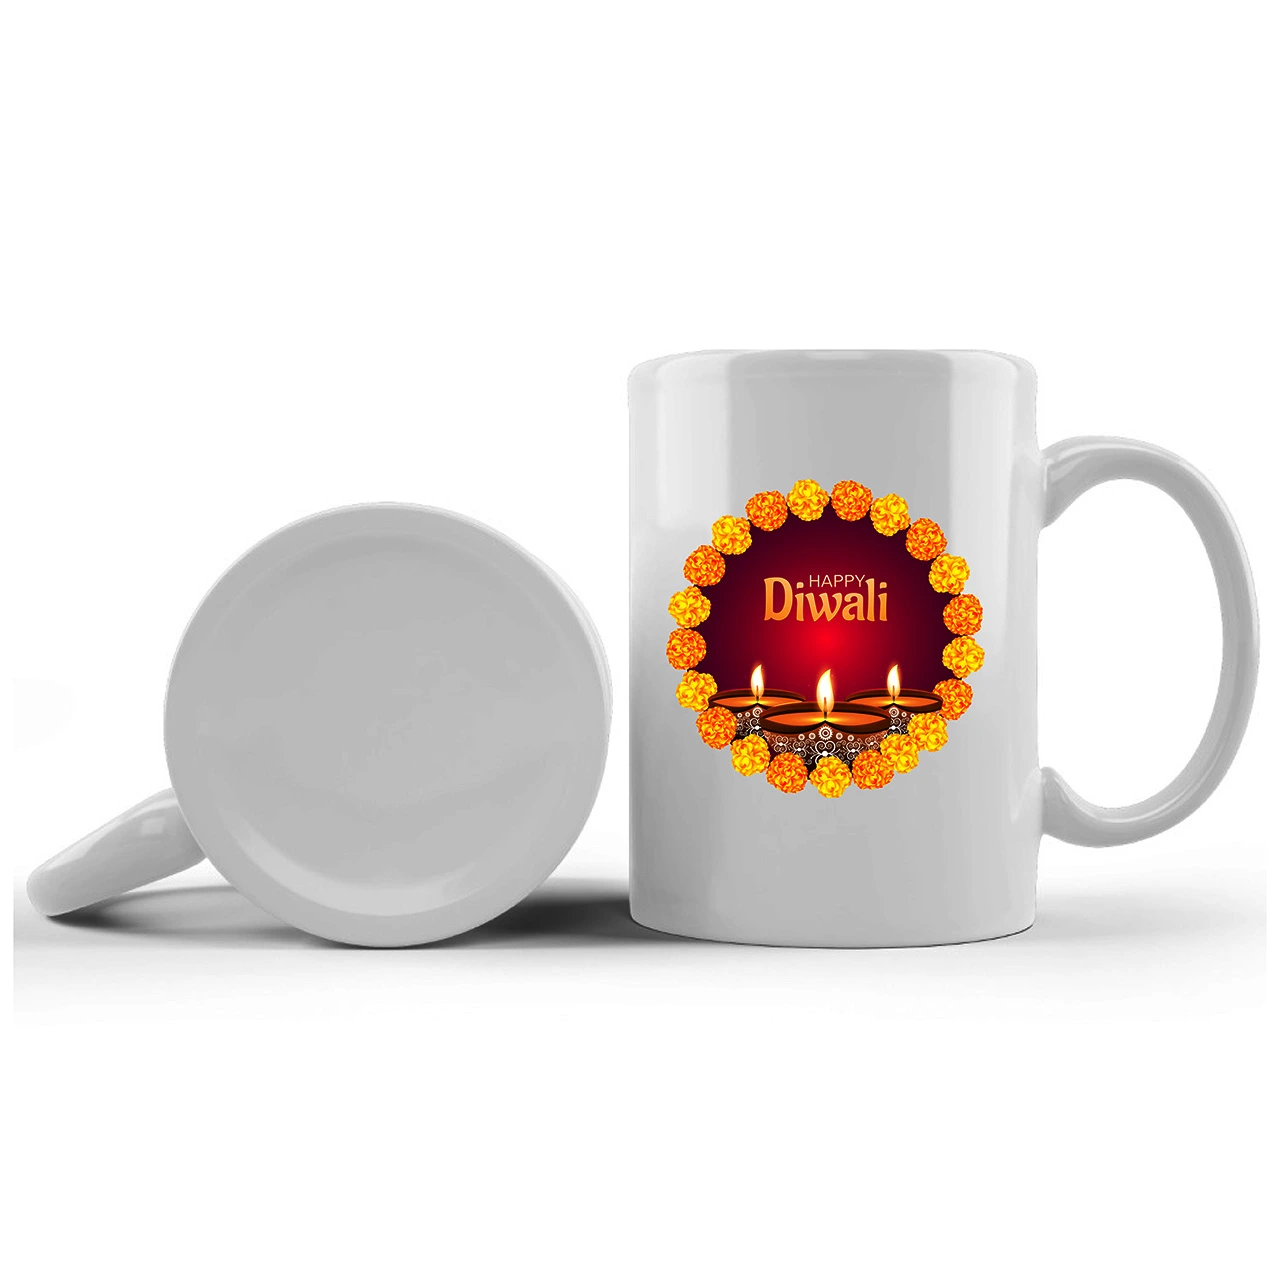 Happy Diwali Printed Ceramic Mug Gifts for | Diwali Gifts, Diwali Gift Items, Diwali Gifts for Friends, Diwali Gifts for Friends and Family, Gifts for Diwali (Design 3)